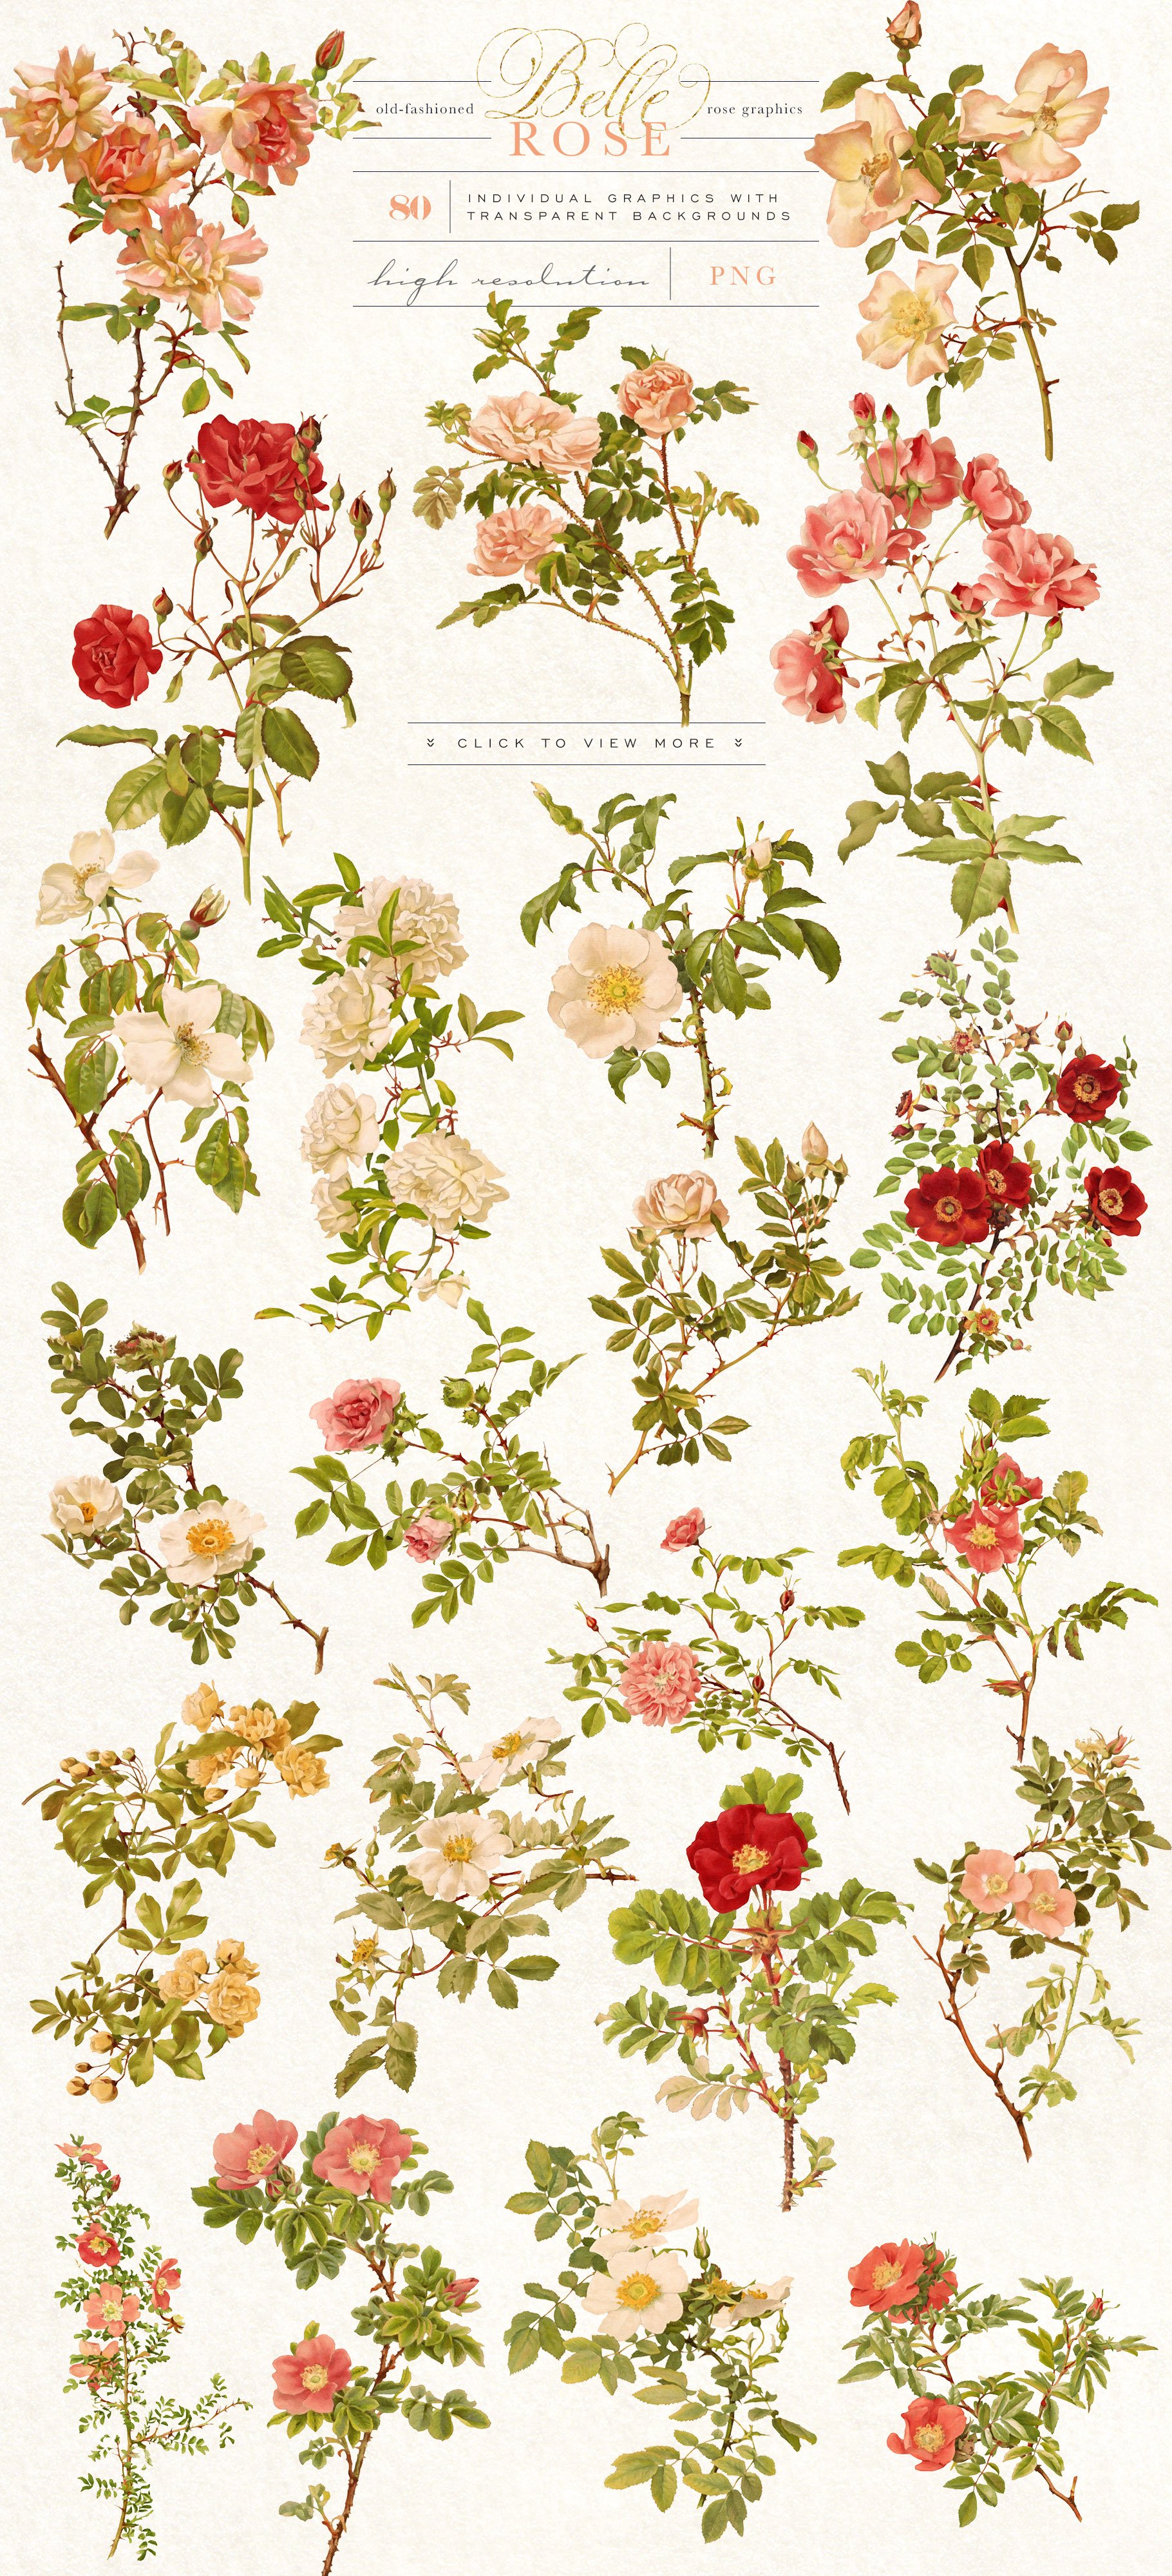 Belle Rose Antique Graphics Bundle